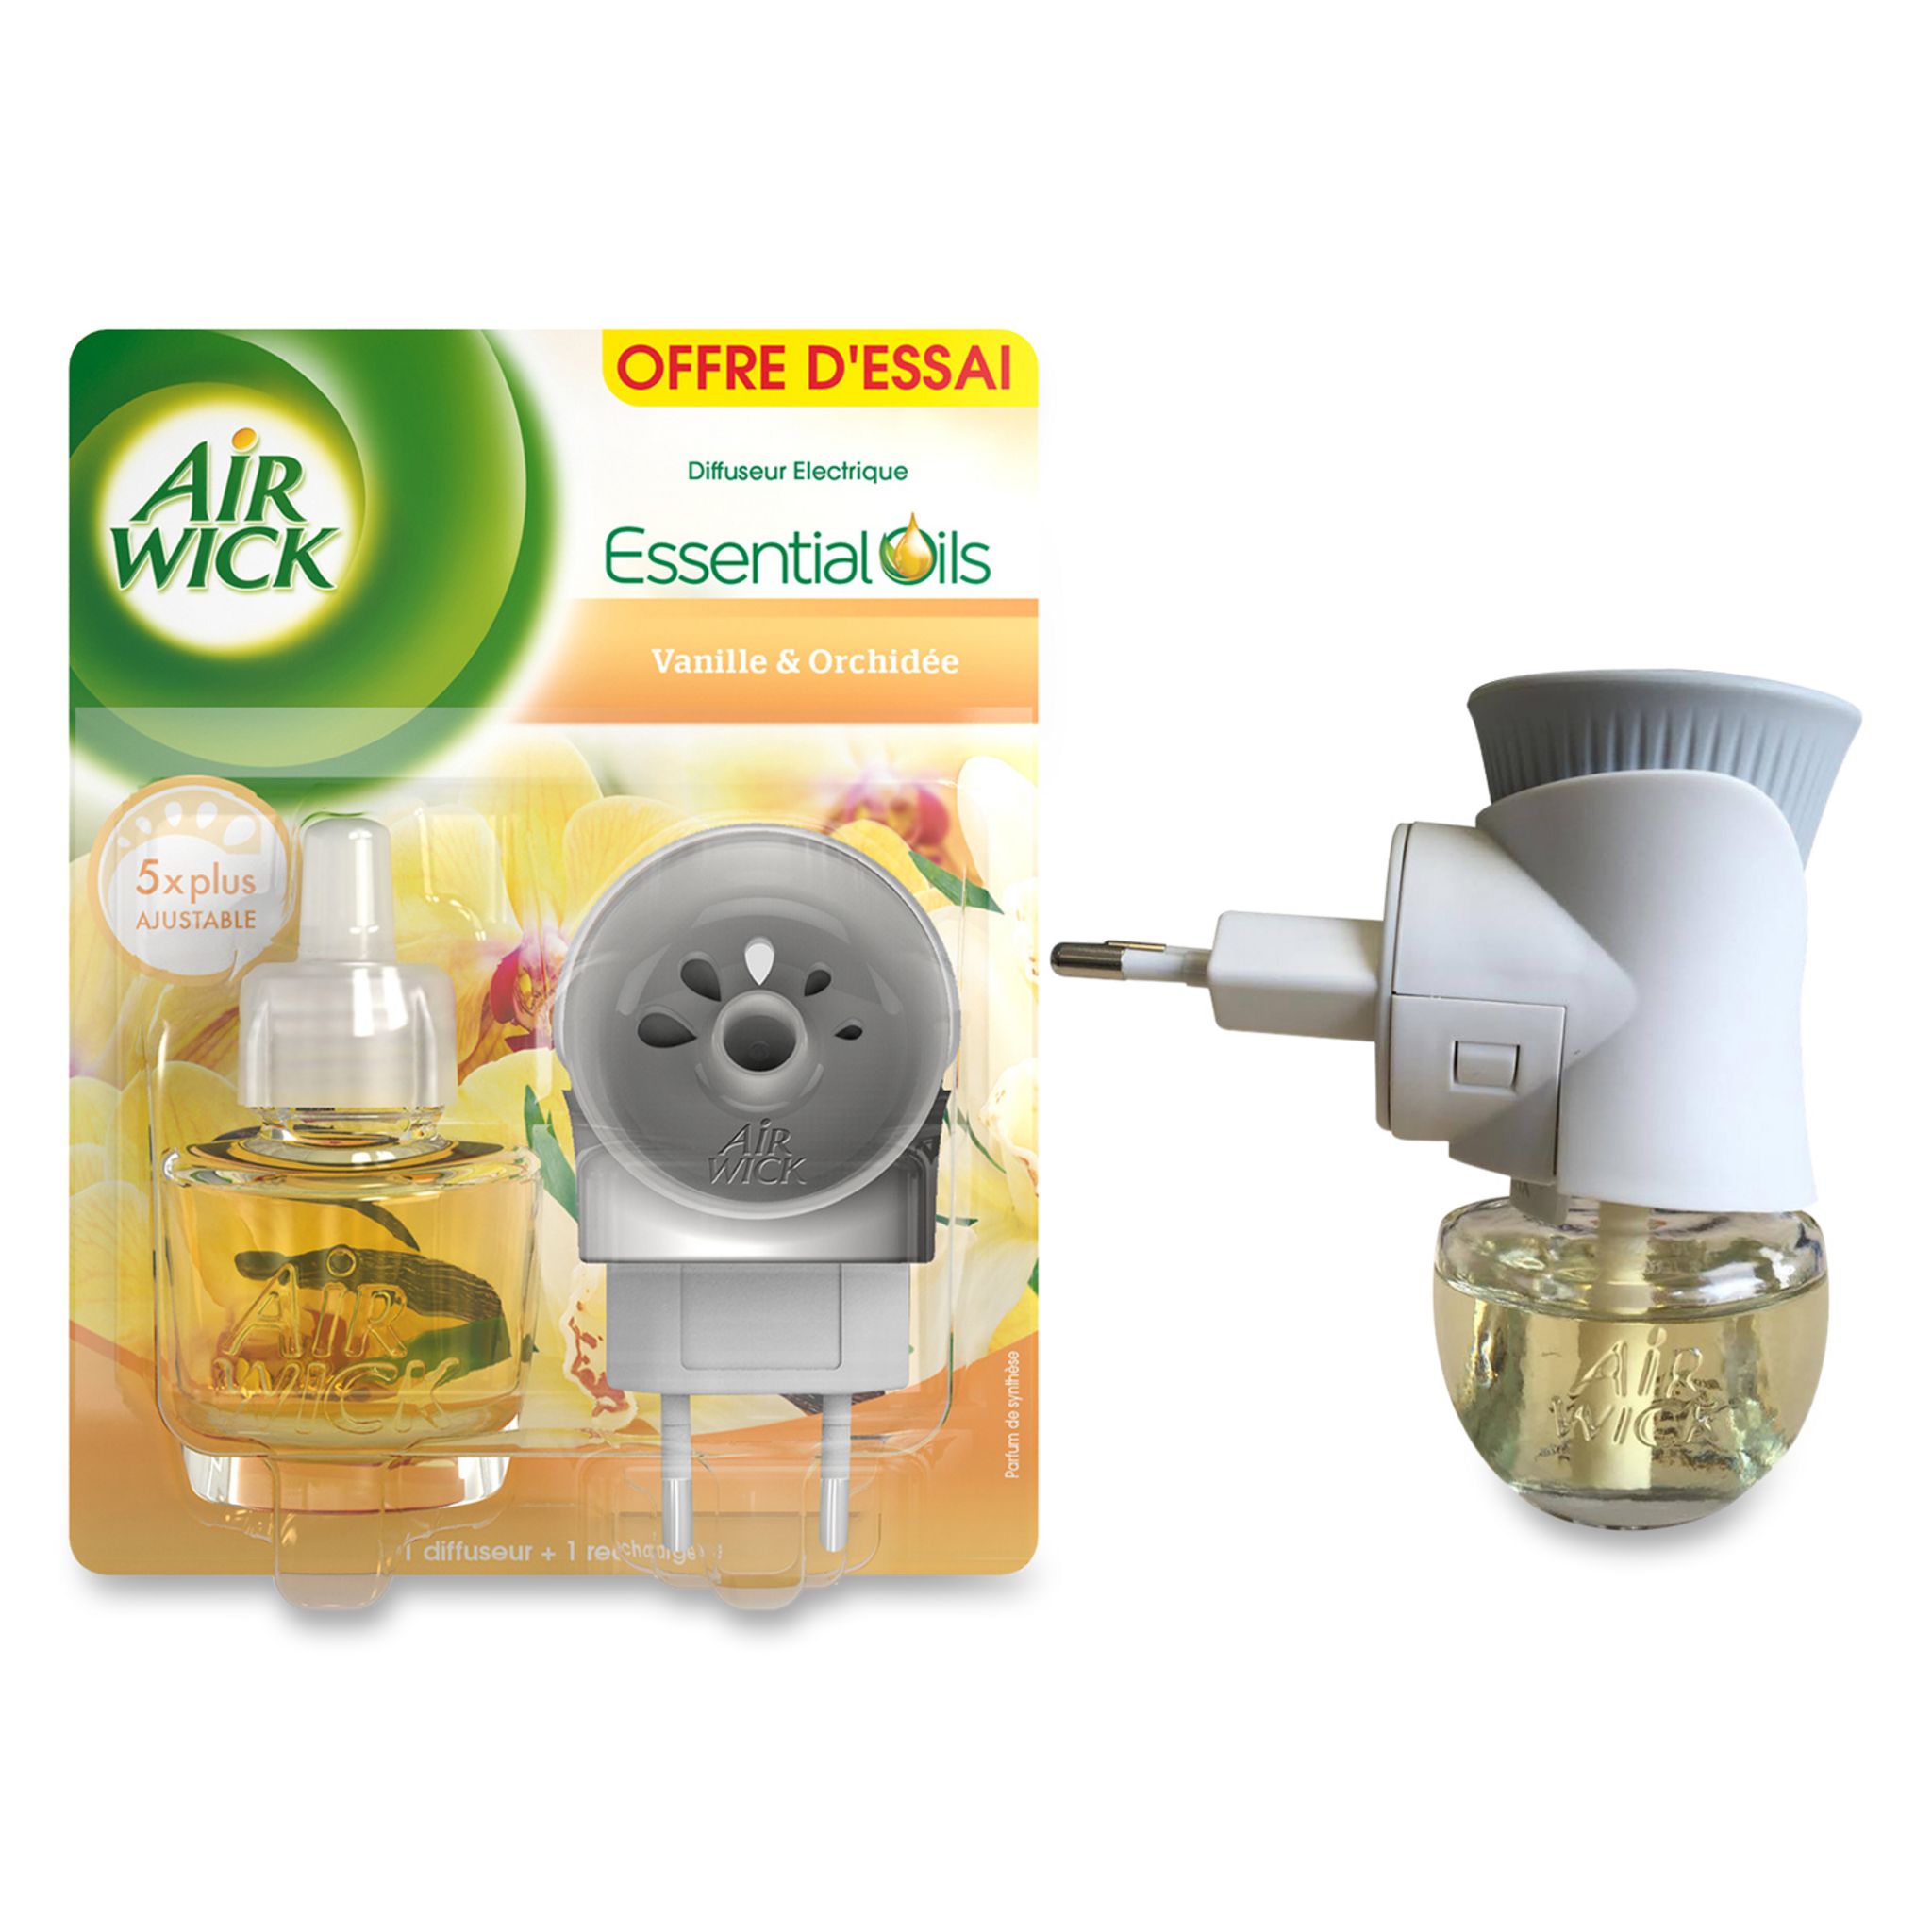 AIR WICK Essential Oils recharge pour diffuseur electrique